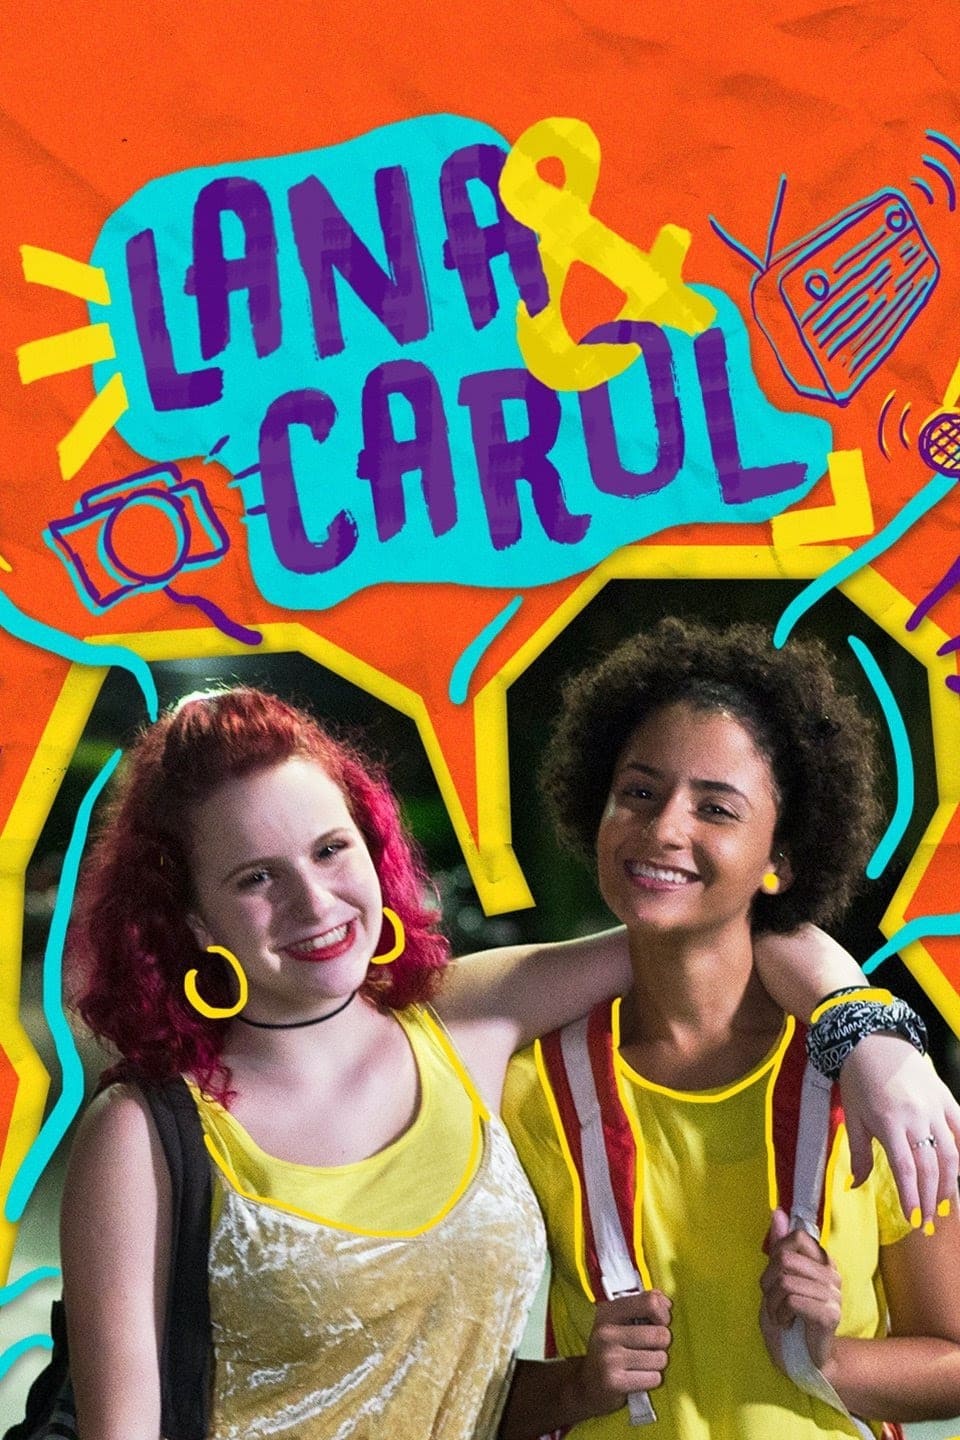 Lana & Carol